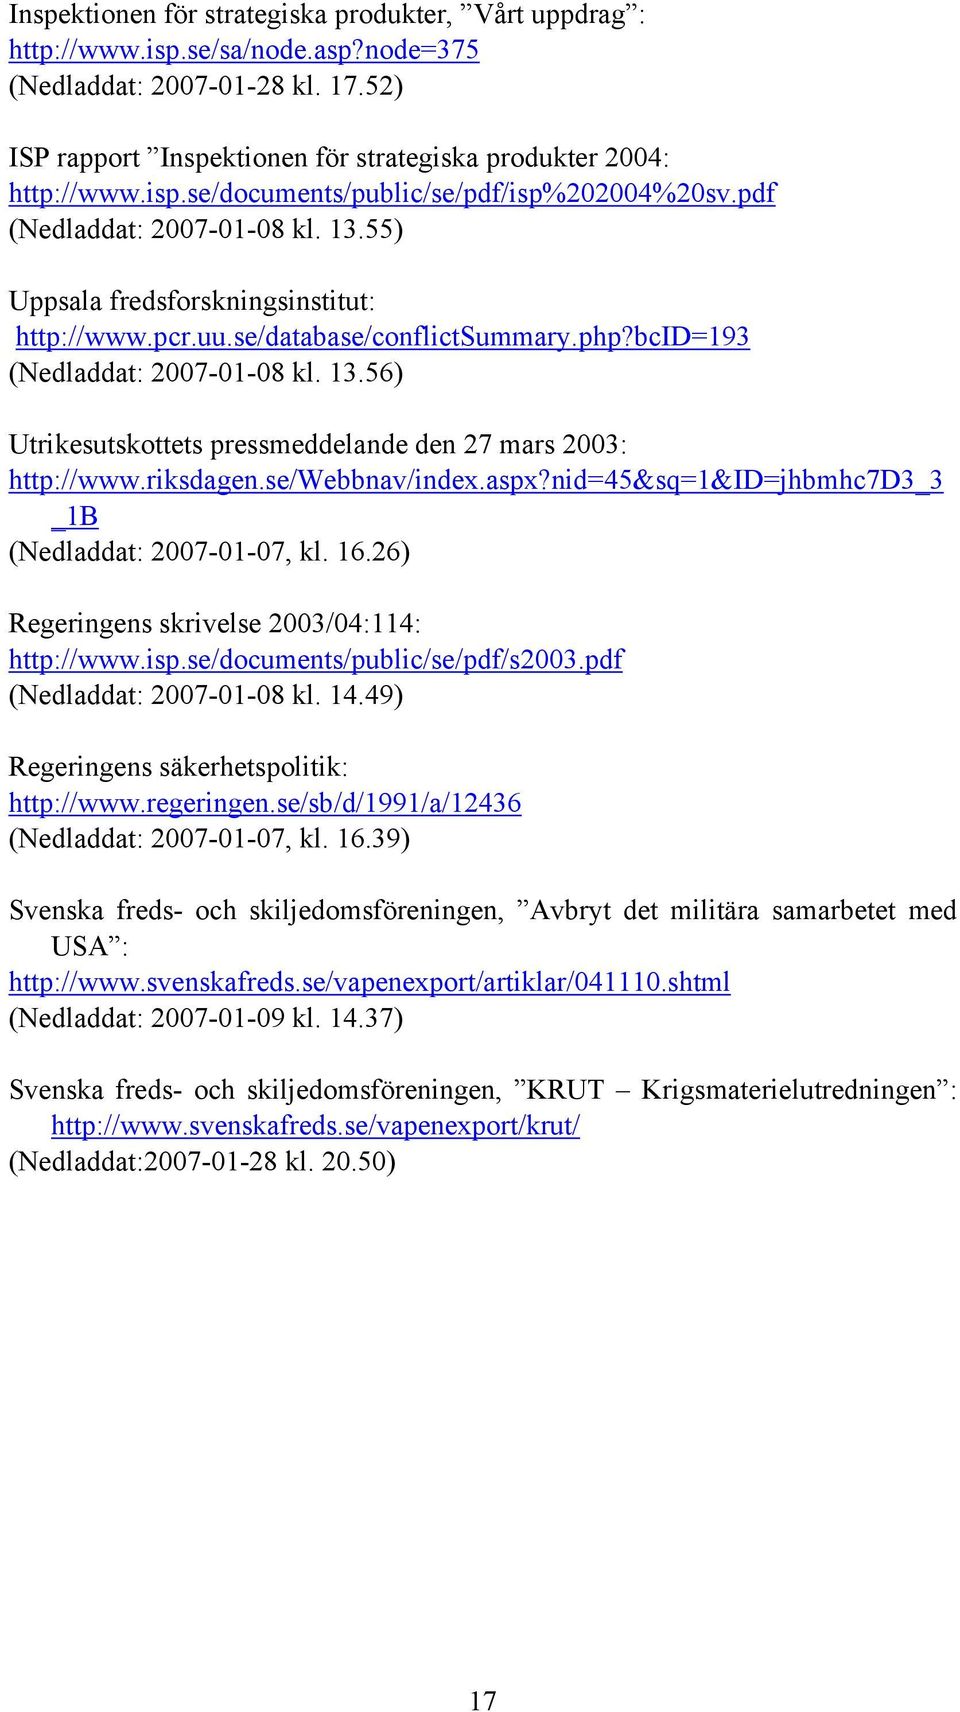 riksdagen.se/webbnav/index.aspx?nid=45&sq=1&id=jhbmhc7d3_3 _1B (Nedladdat: 2007-01-07, kl. 16.26) Regeringens skrivelse 2003/04:114: http://www.isp.se/documents/public/se/pdf/s2003.